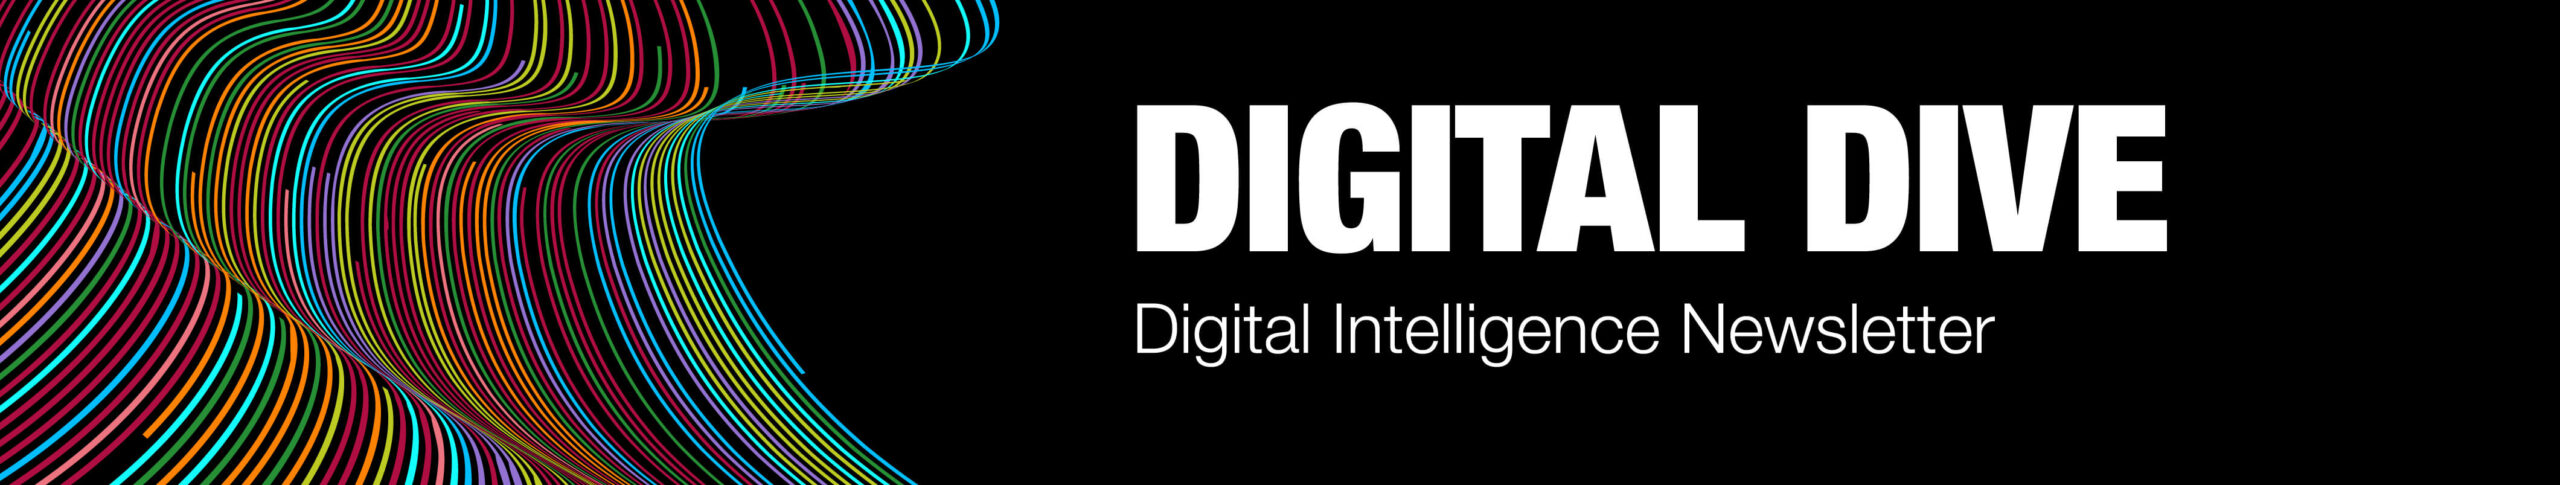 The Digital Dive - Digital Intelligence Newsletter.